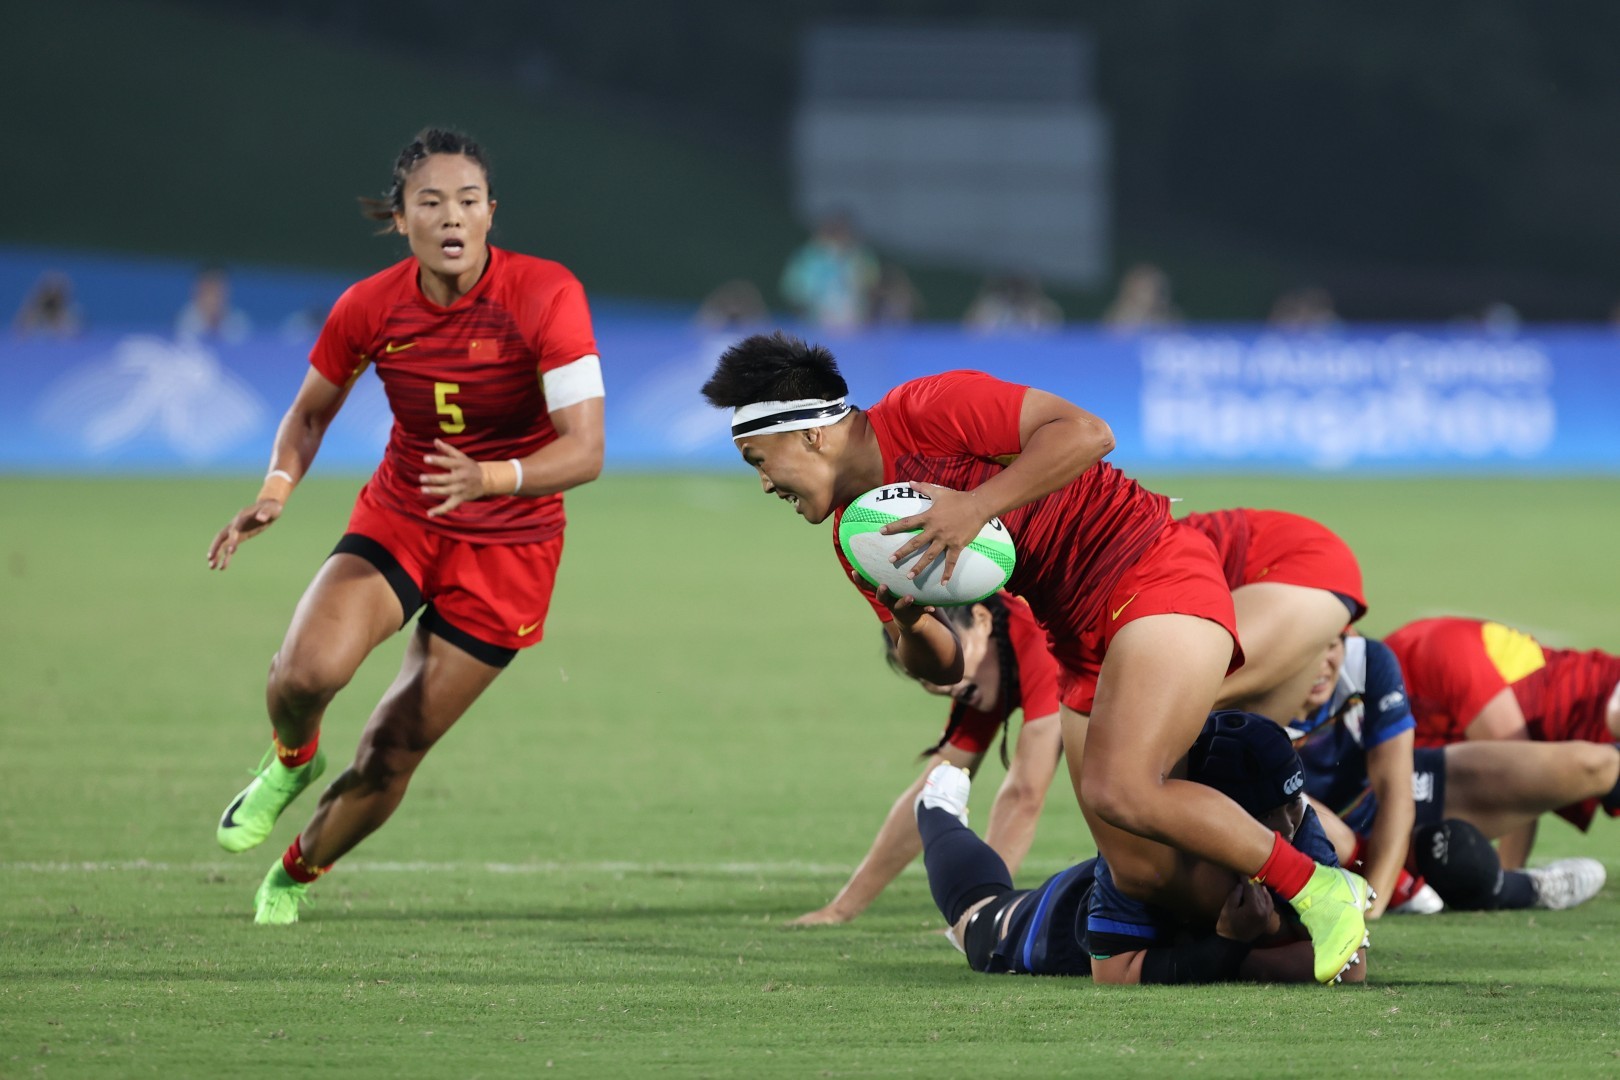 一分之差险胜日本,中国女子橄榄球时隔9年再登顶:铿锵玫瑰,好样的!